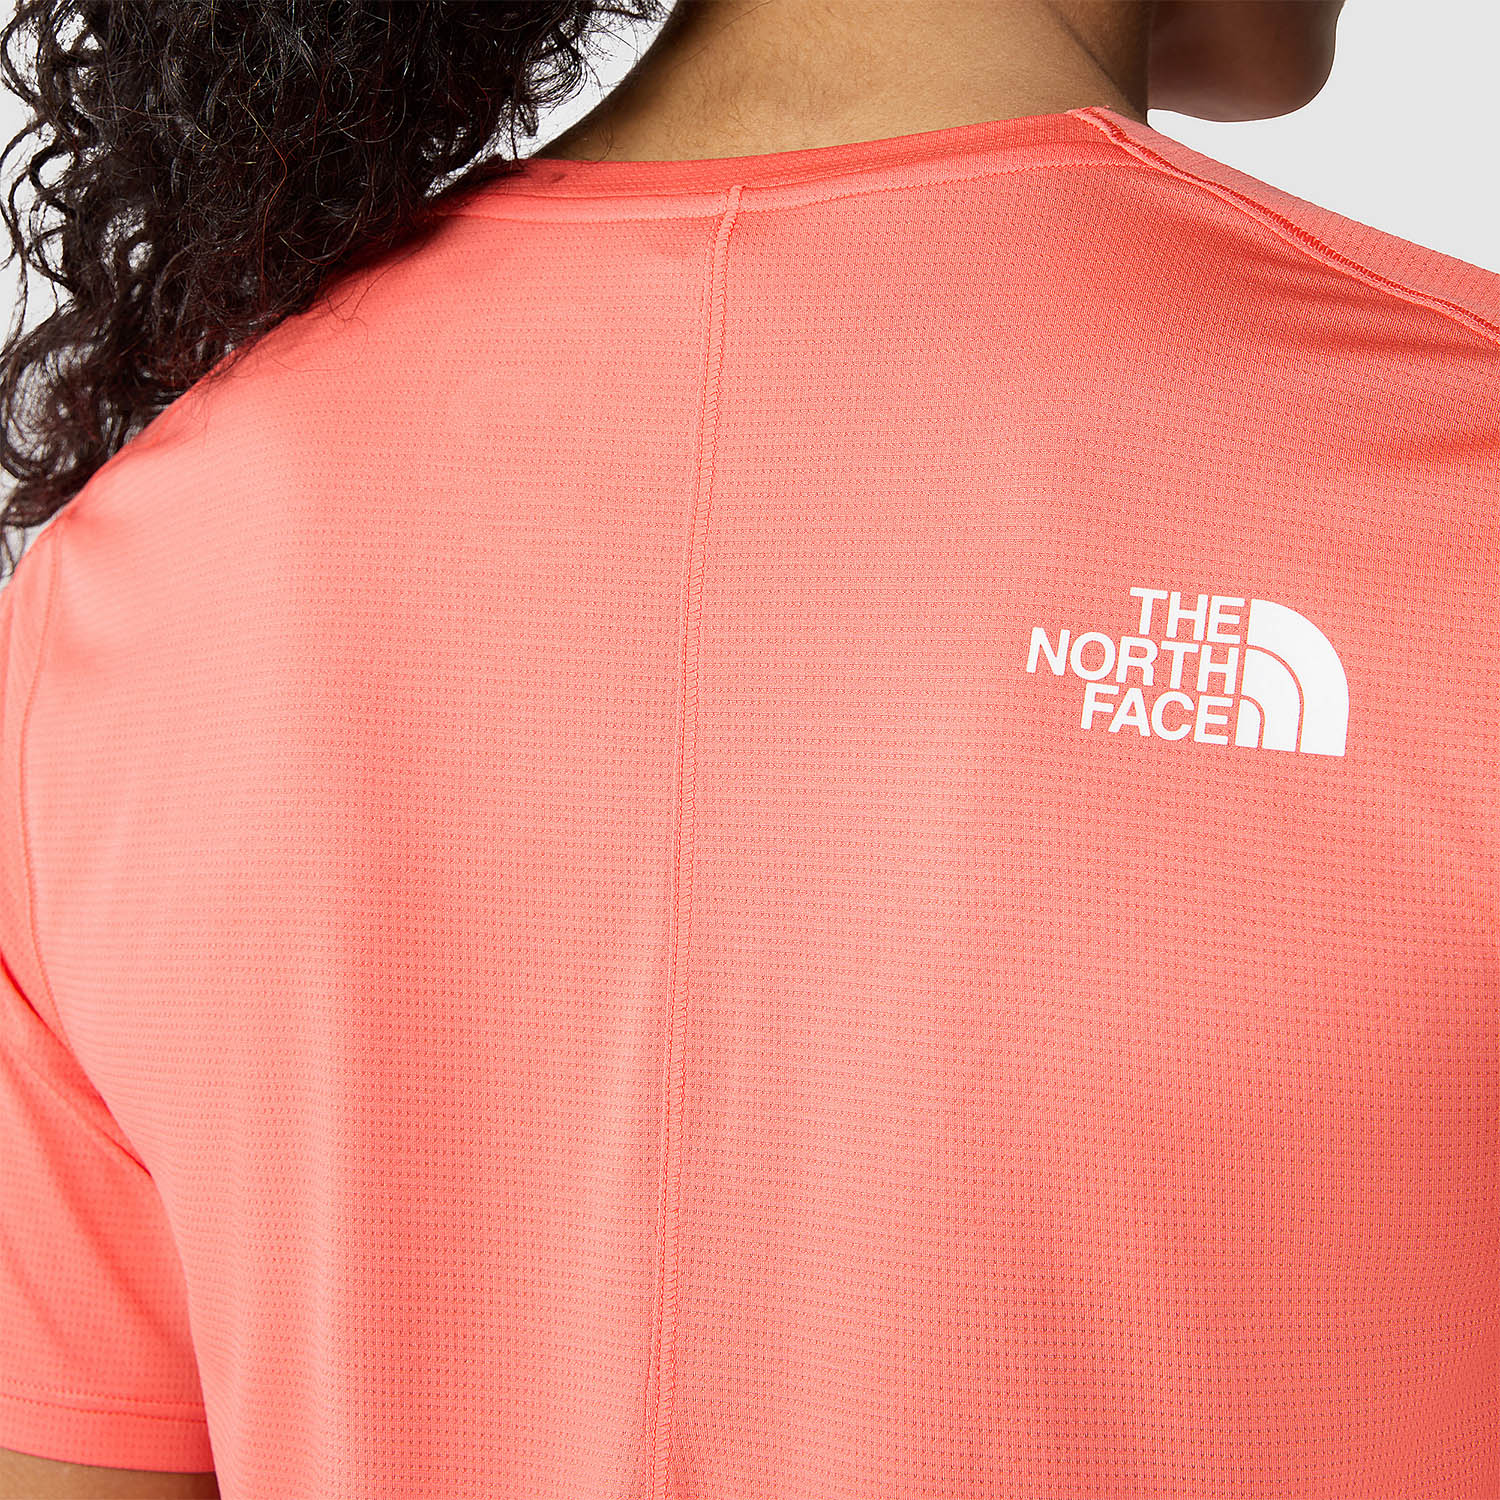 The North Face Summit High Camiseta - Radiant Orange